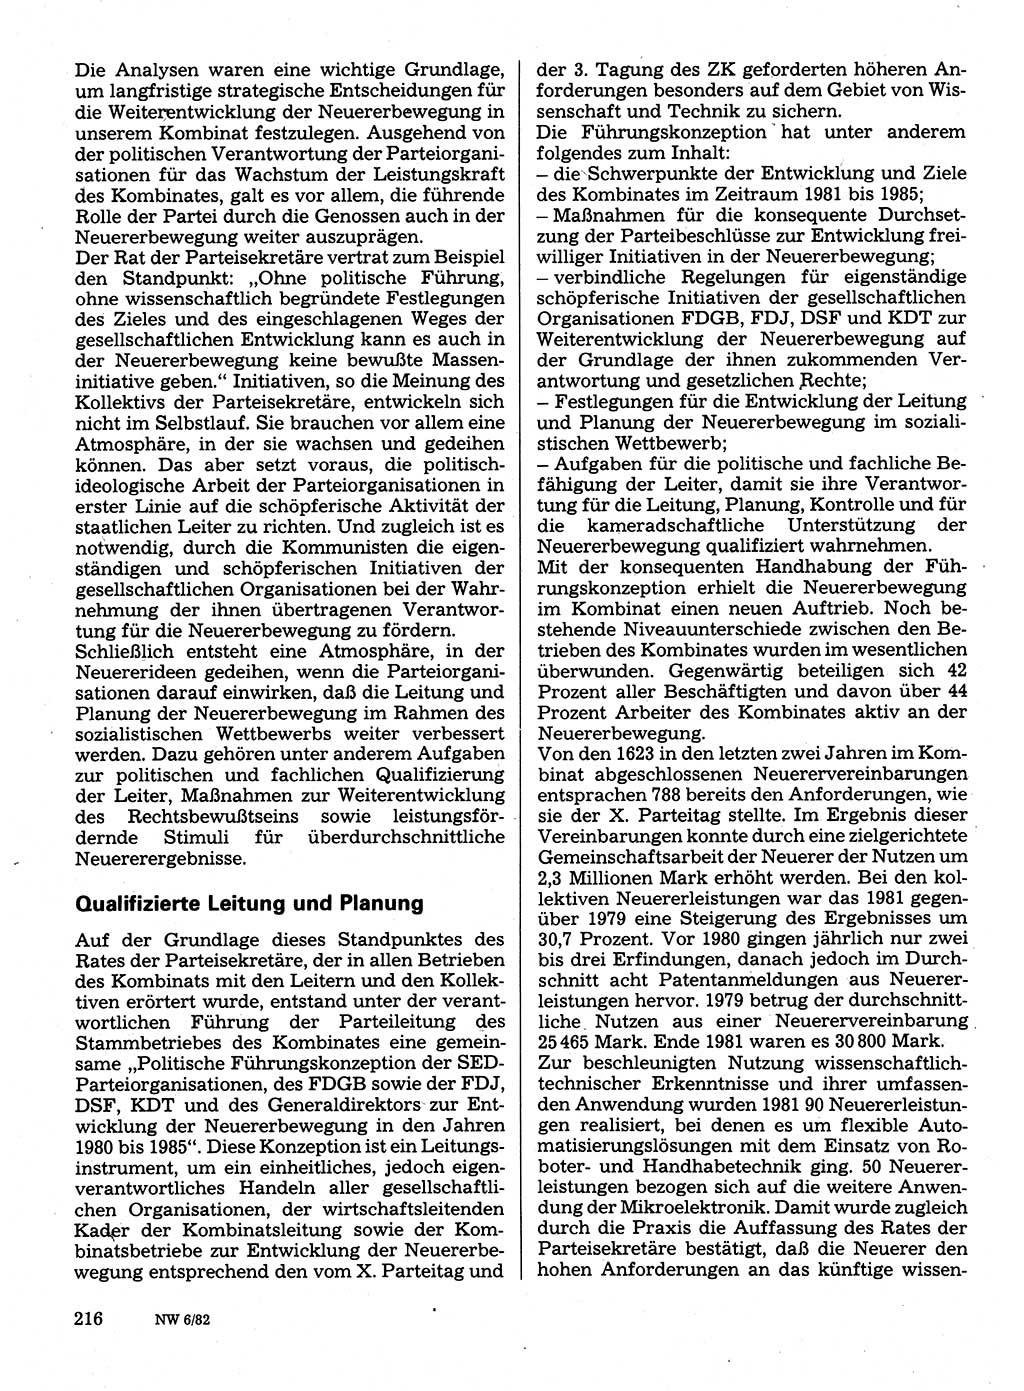 Neuer Weg (NW), Organ des Zentralkomitees (ZK) der SED (Sozialistische Einheitspartei Deutschlands) für Fragen des Parteilebens, 37. Jahrgang [Deutsche Demokratische Republik (DDR)] 1982, Seite 216 (NW ZK SED DDR 1982, S. 216)